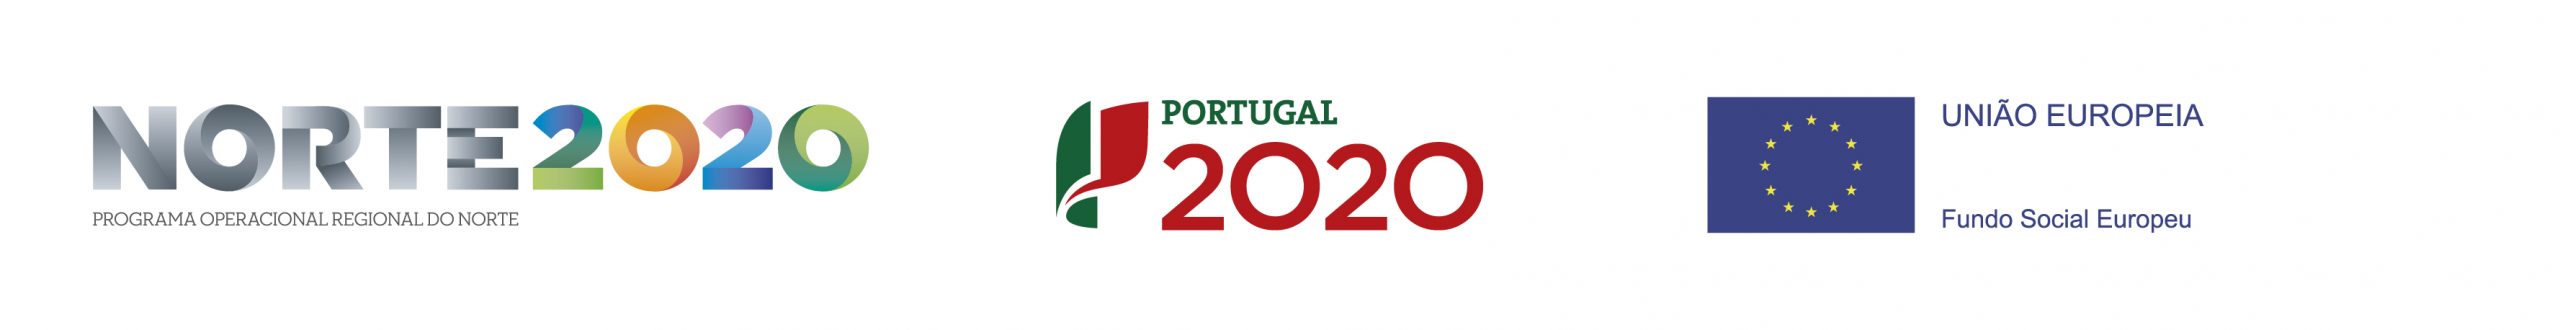 portugal norte 2020